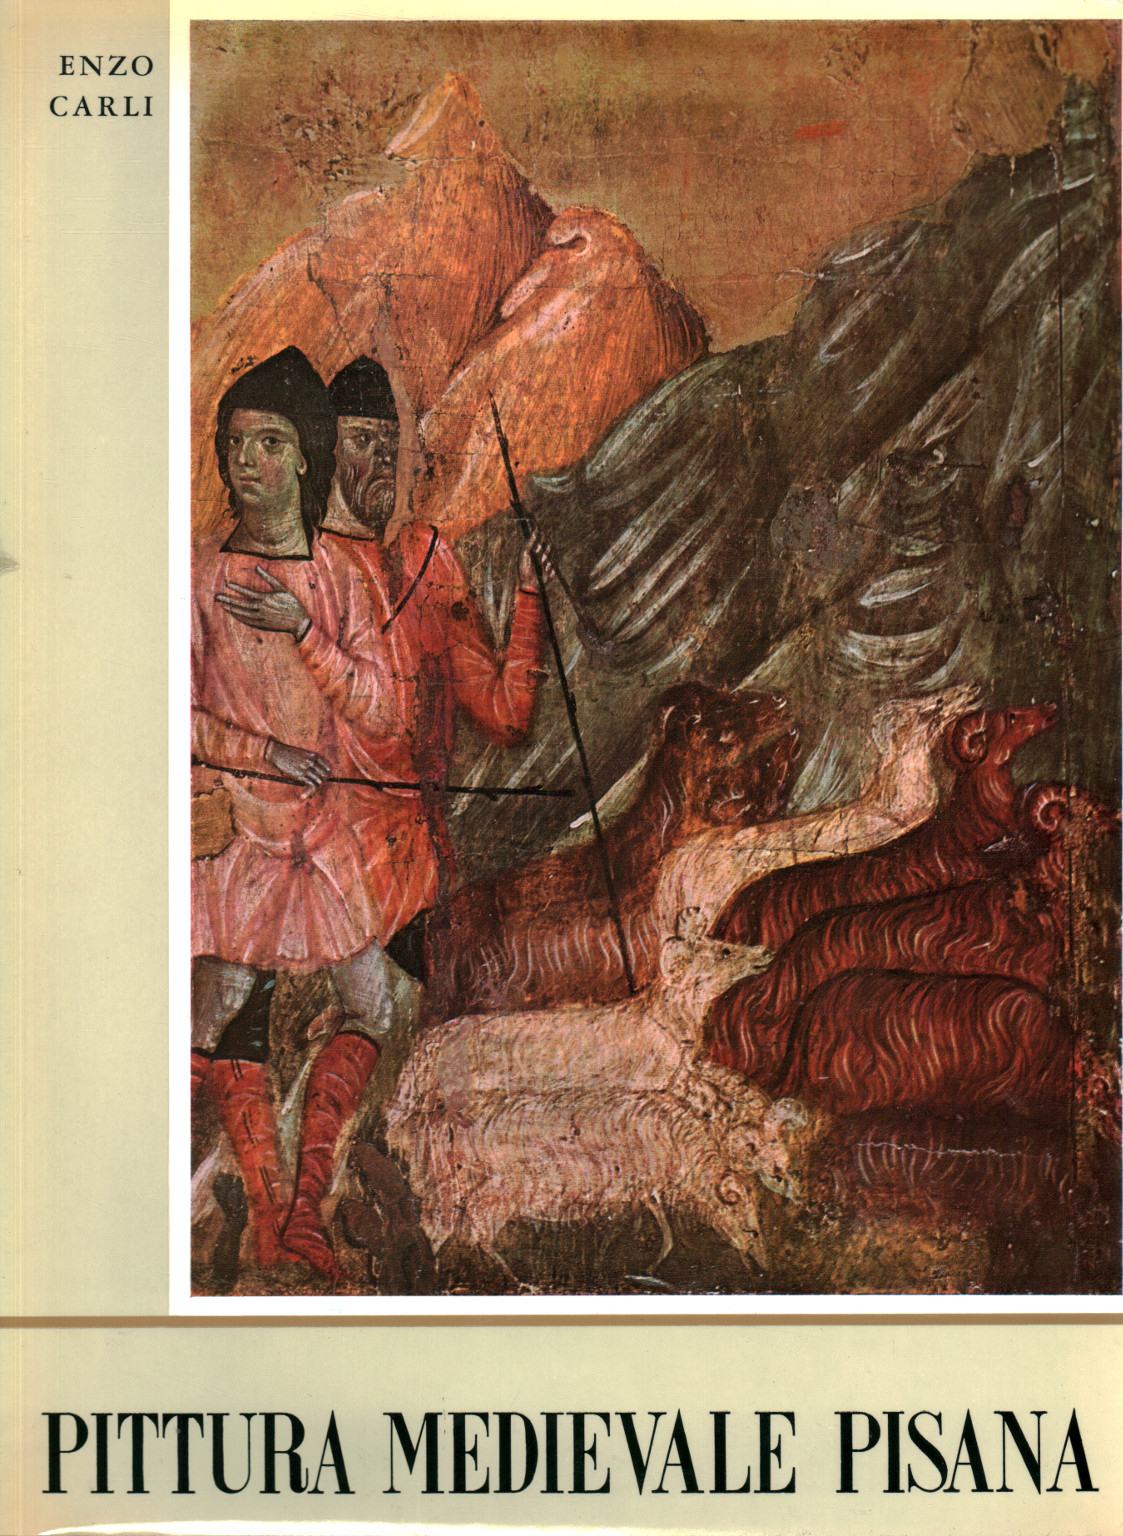 Pisanische mittelalterliche Malerei, Enzo Carli